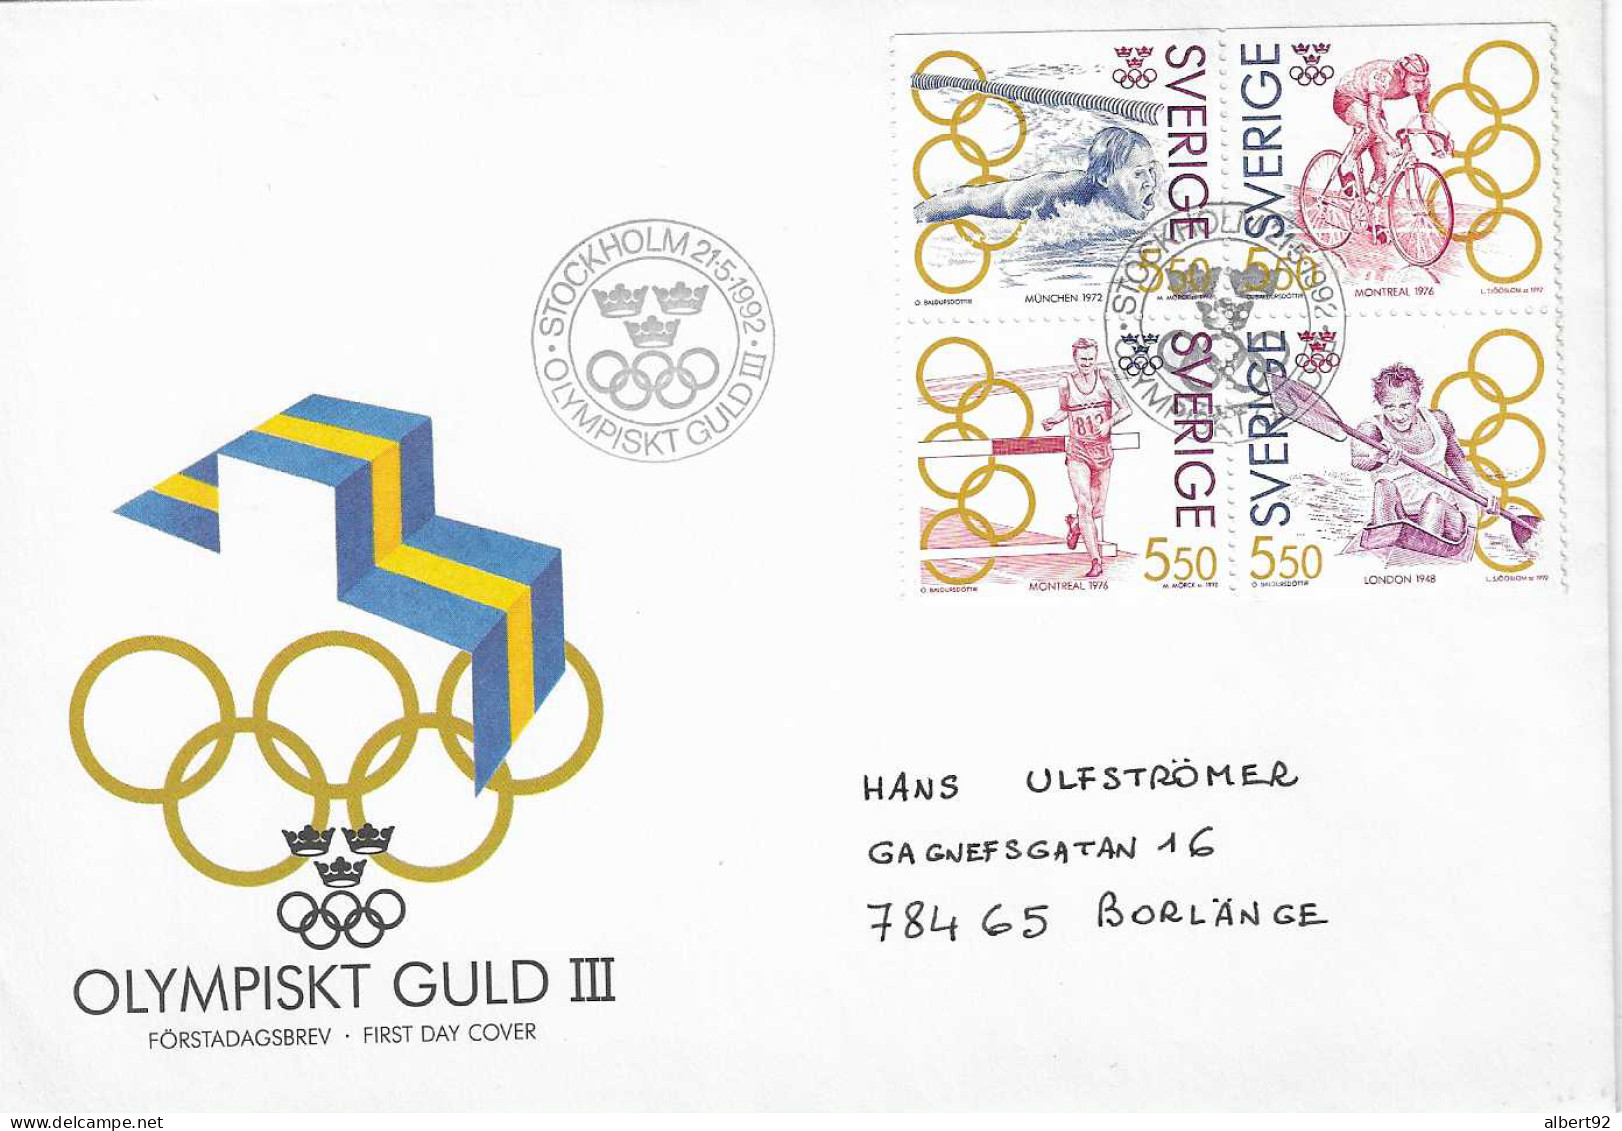 1992 Médaillés OR Suédois Aux Jeux Olympiques: Canoë (Londres 1948) Athlétisme, Cyclisme (Montréal 1976) Natation (1972) - Inverno1932: Lake Placid